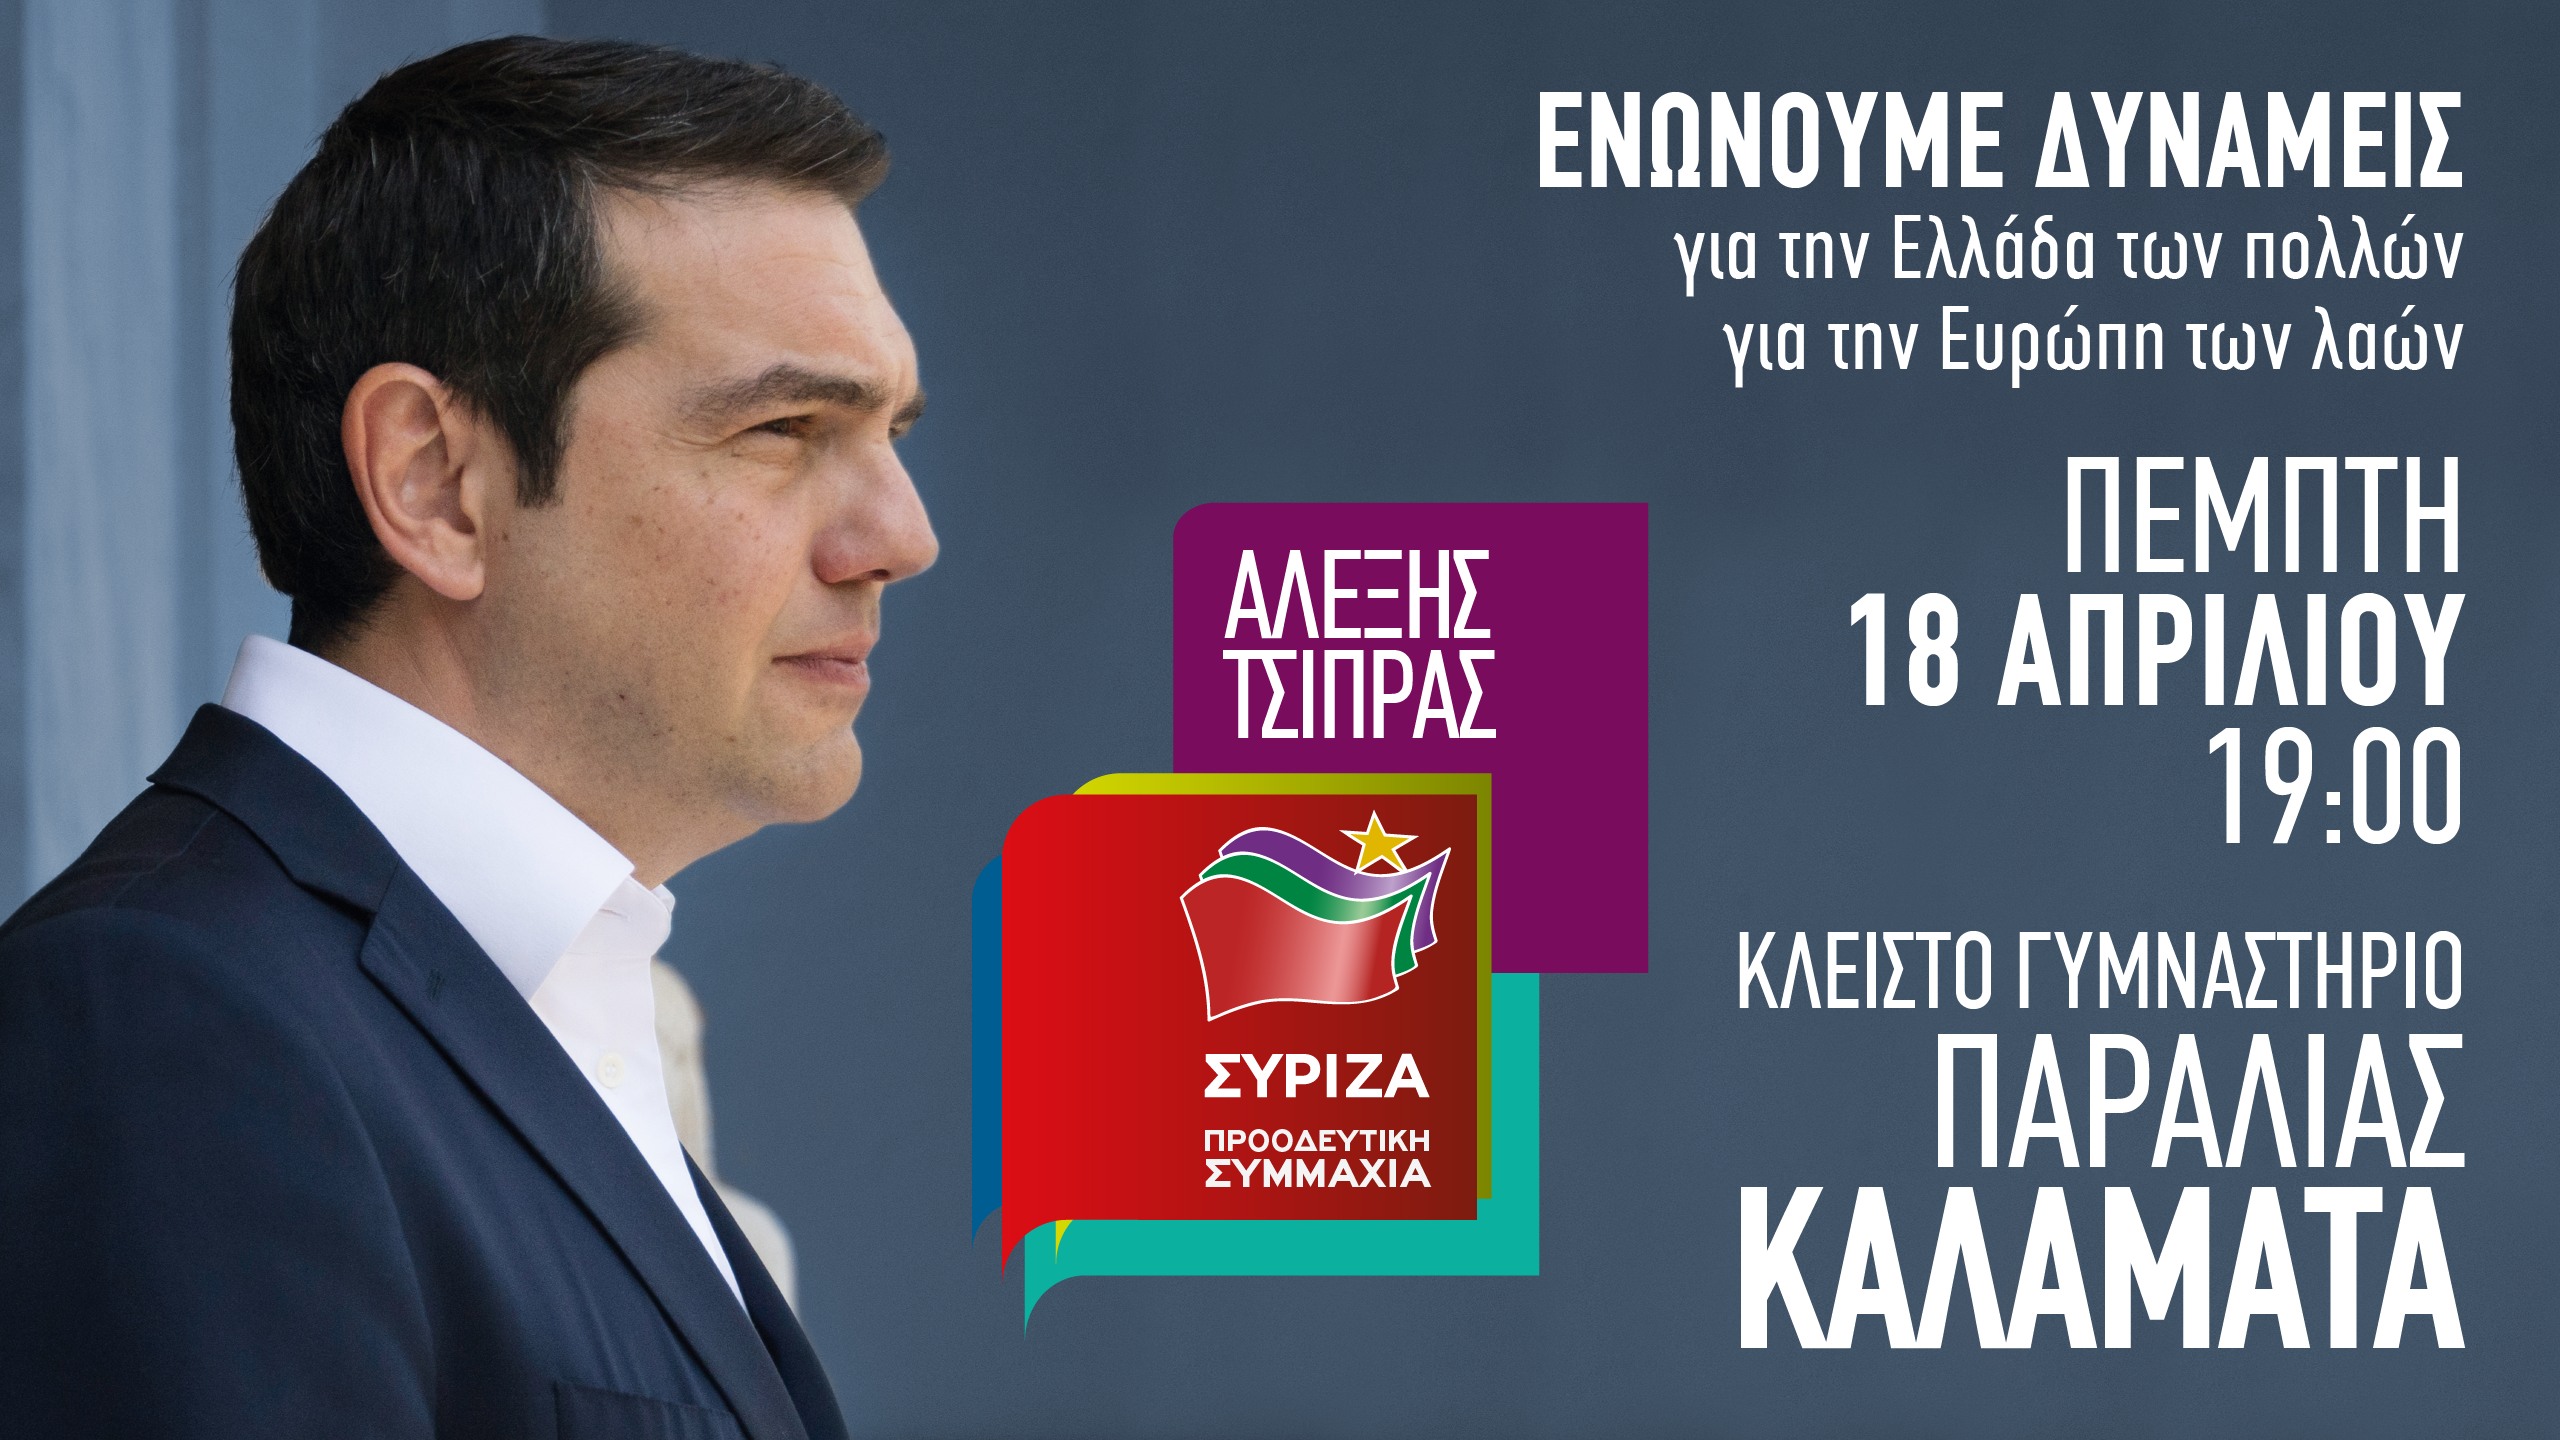 Ομιλία του Πρωθυπουργού και Πρόεδρου του ΣΥΡΙΖΑ, Αλέξη Τσίπρα στην Καλαμάτα